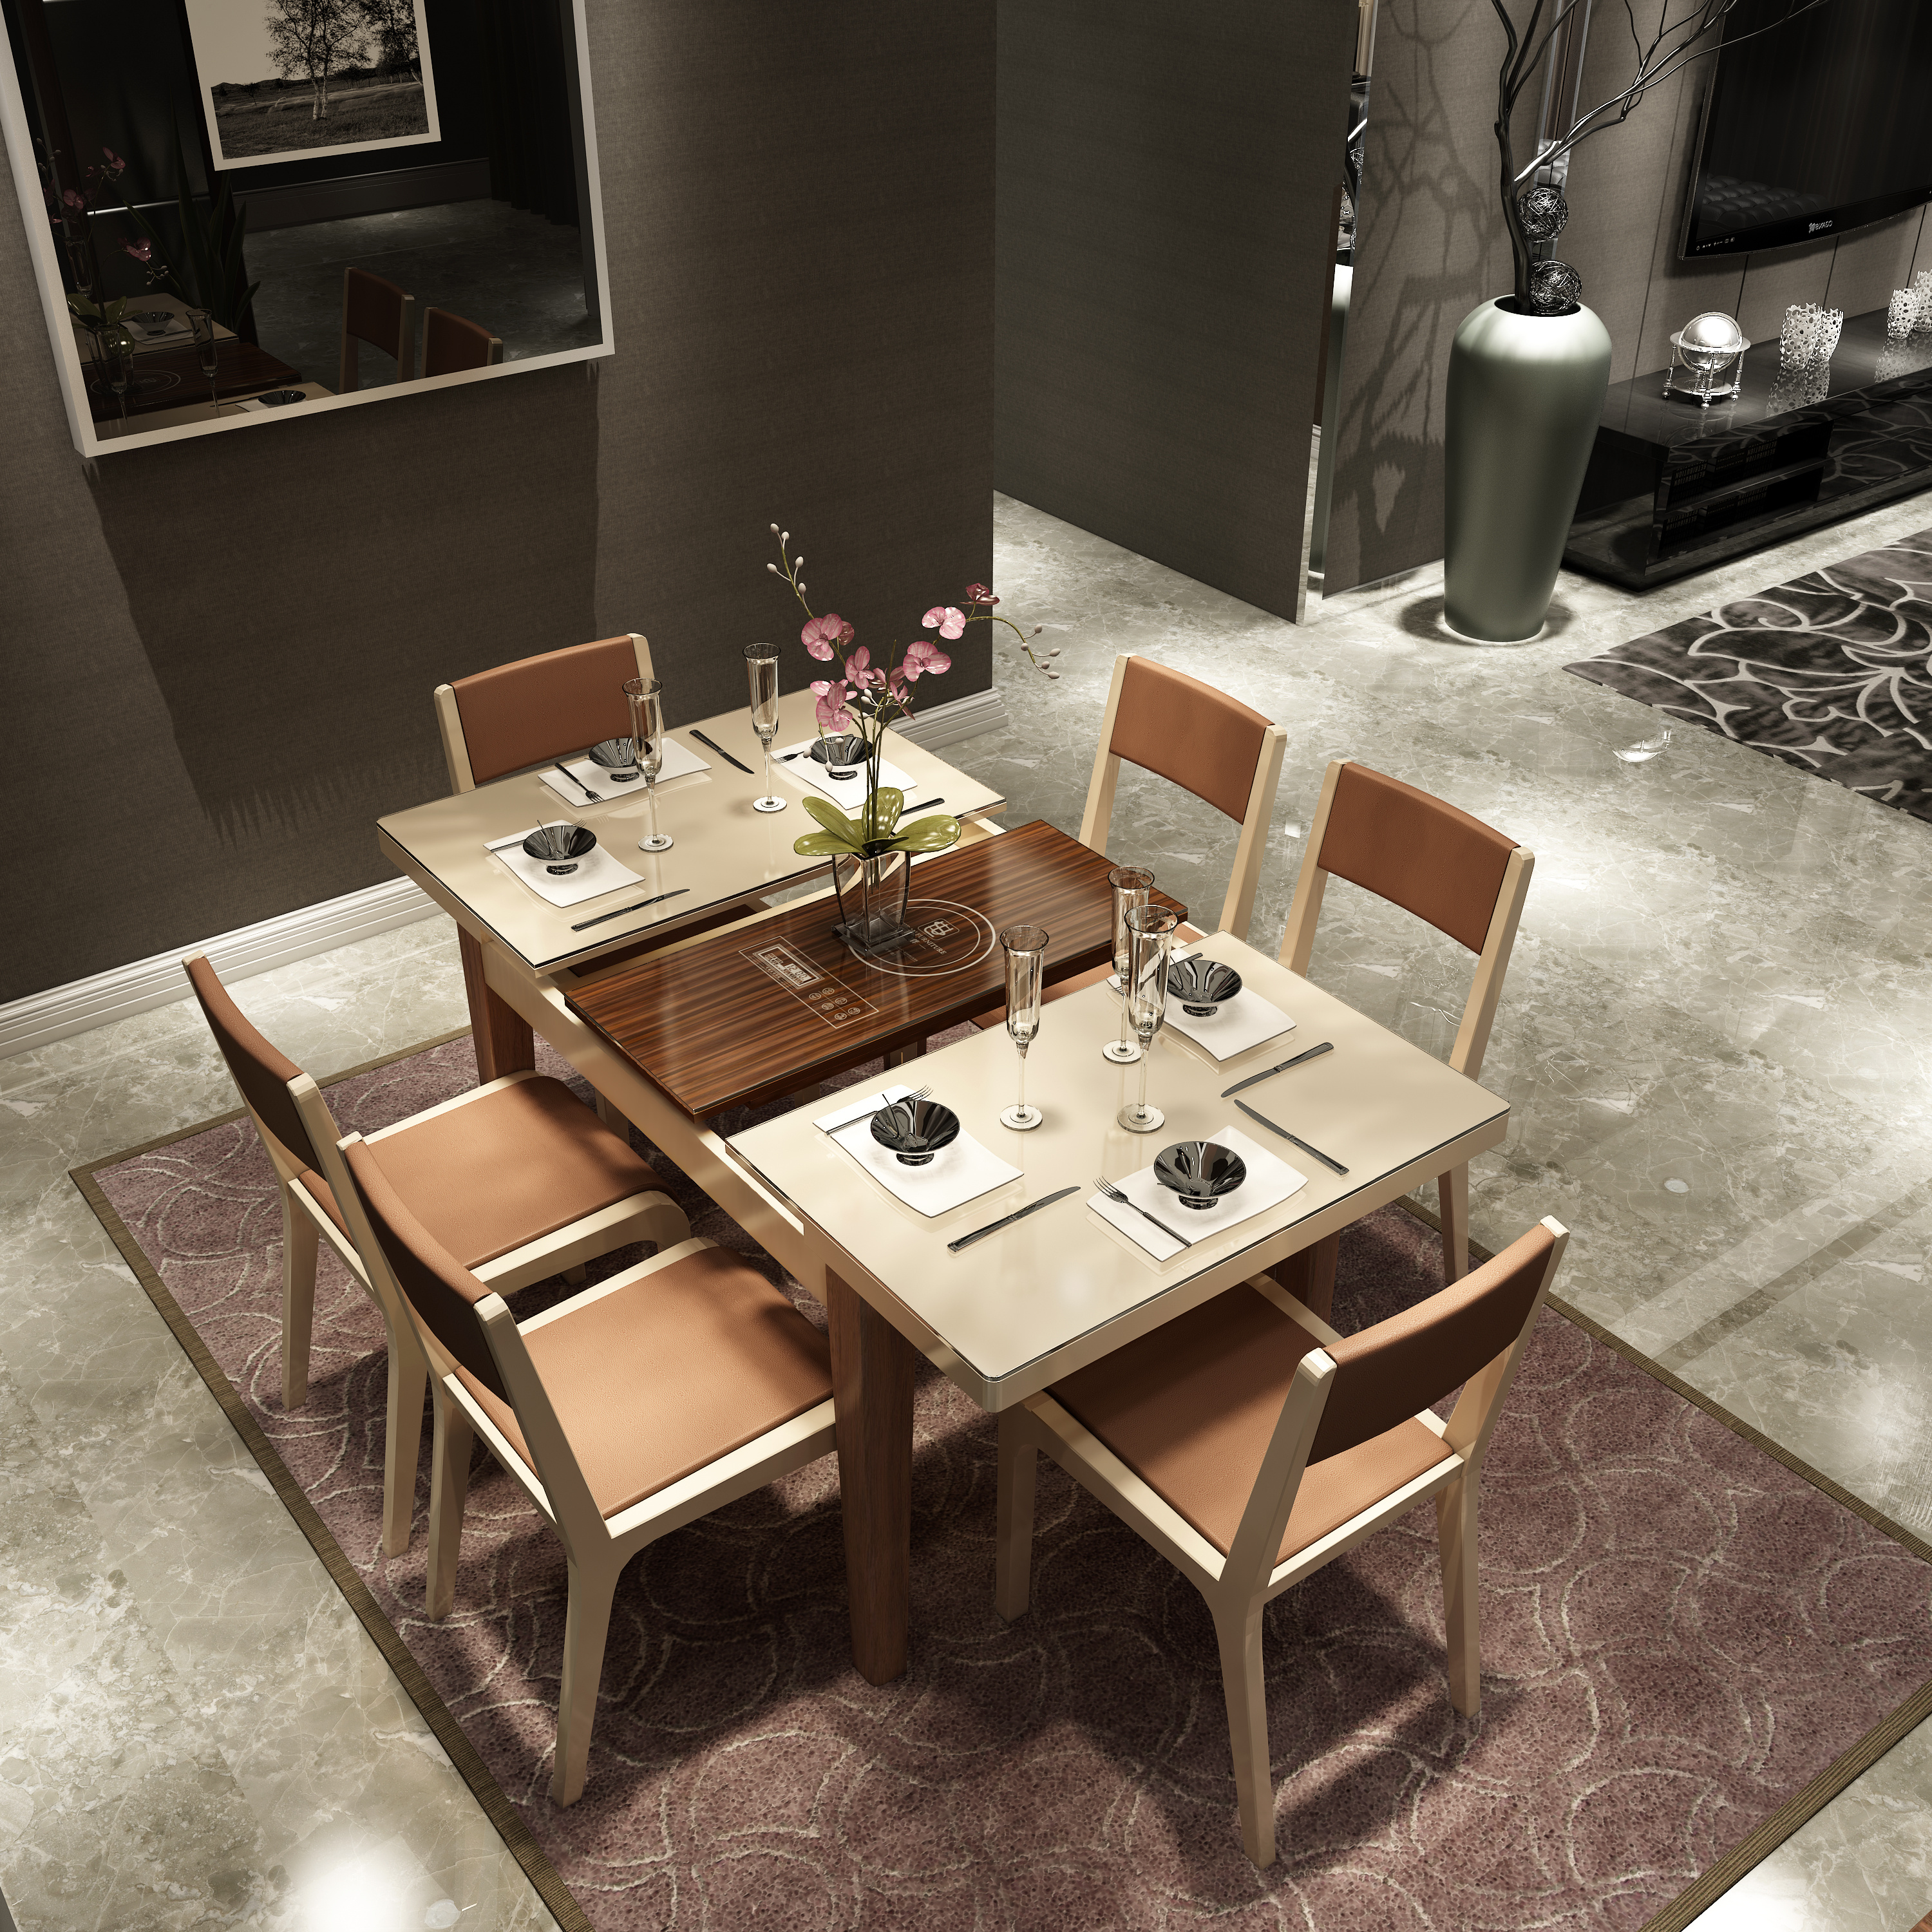 开放式的餐厅和厨房空间 - 家居 ART 设计效果图 - 躺平设计家